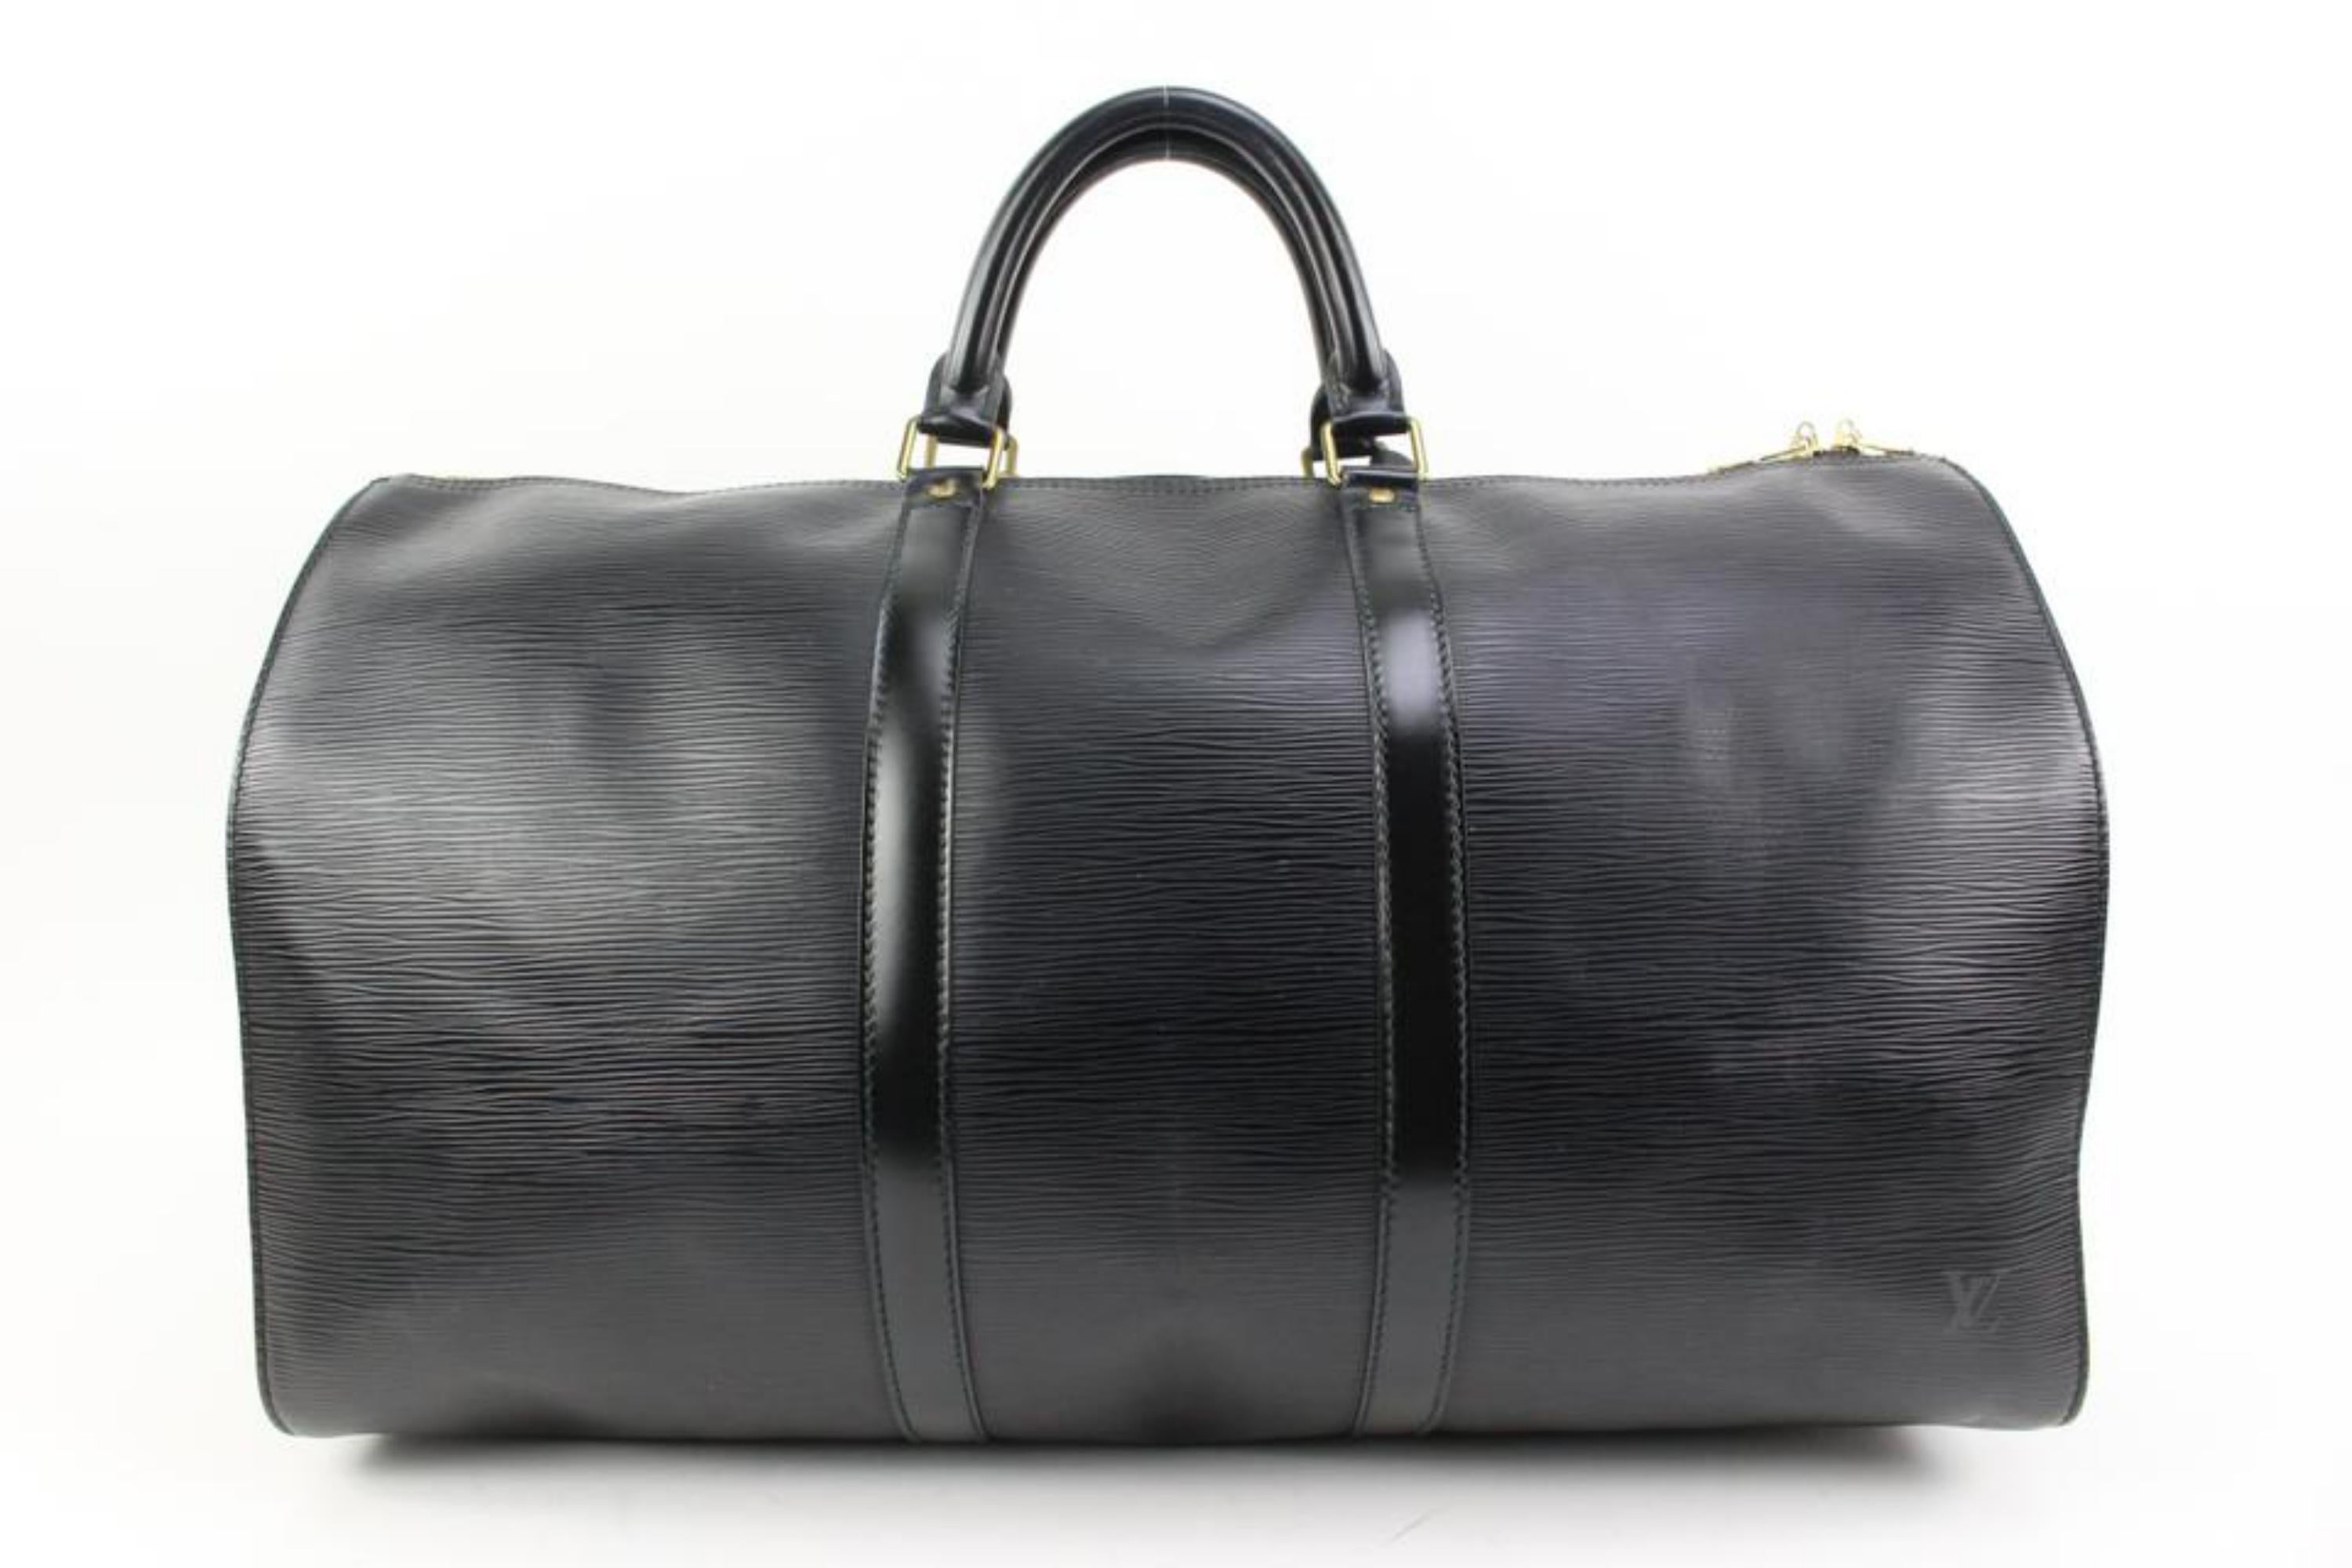 Louis Vuitton Black Epi Leather Noir Keepall 50 Duffle Bag 66lv315s 4